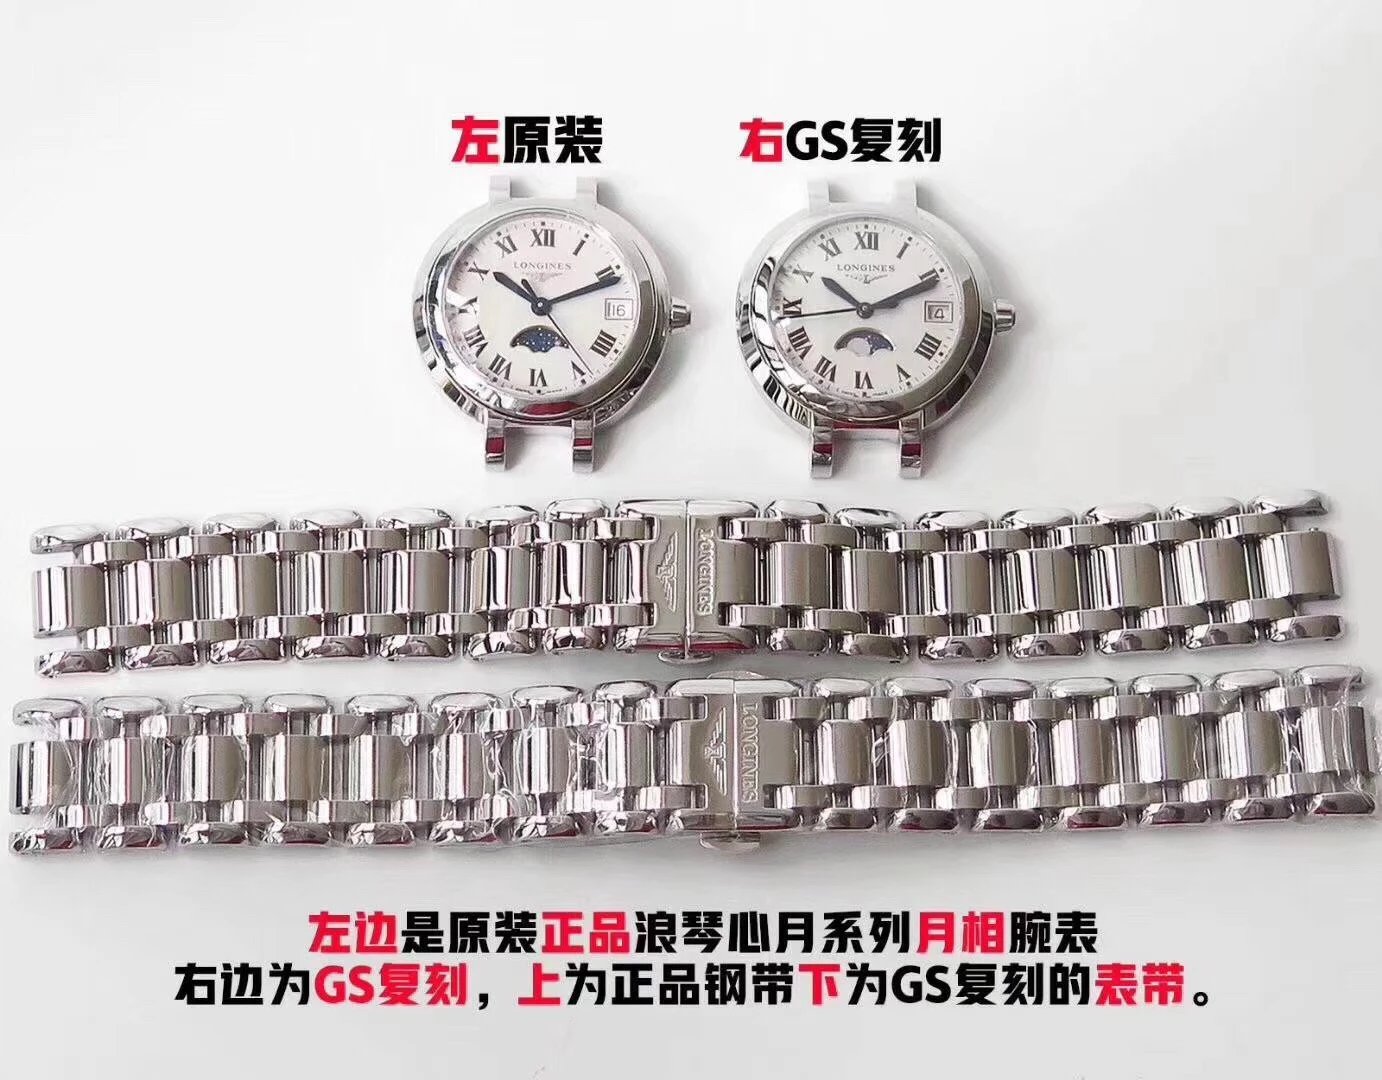 gs厂浪琴心月系列月相女士腕表，月相功能同步原版,尺寸30.5X9.4mm采用带有月相功能的瑞士石英机芯女表